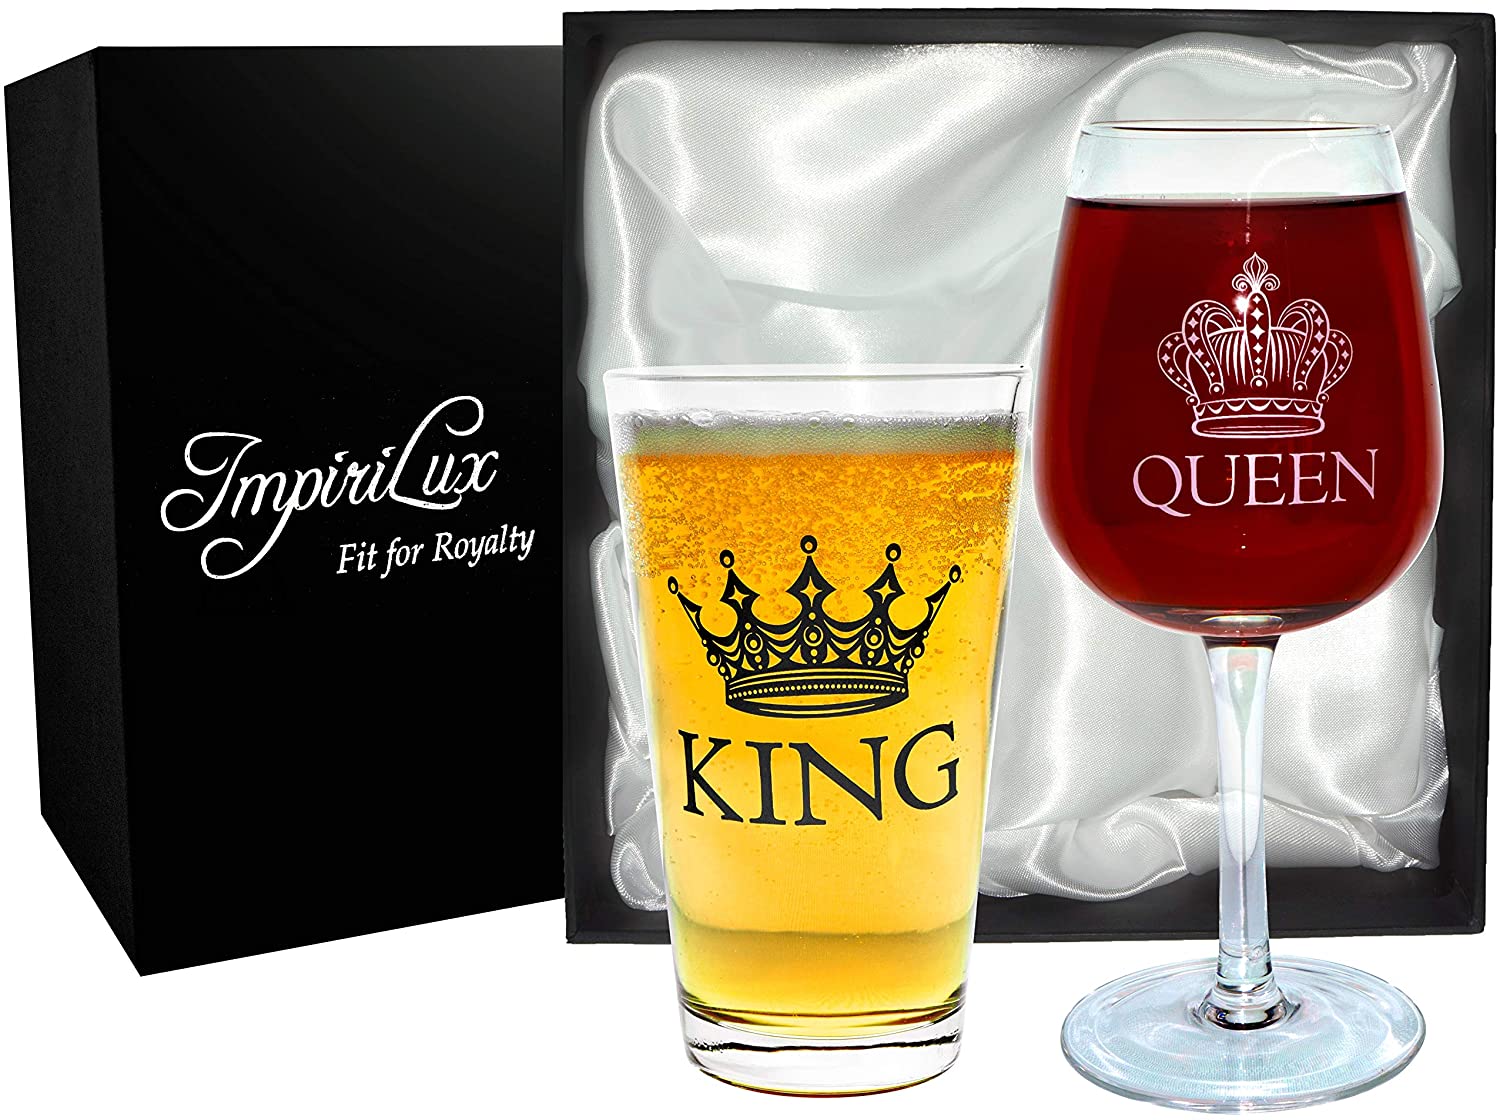 Image of King Beer & Queen Wine Glass Set